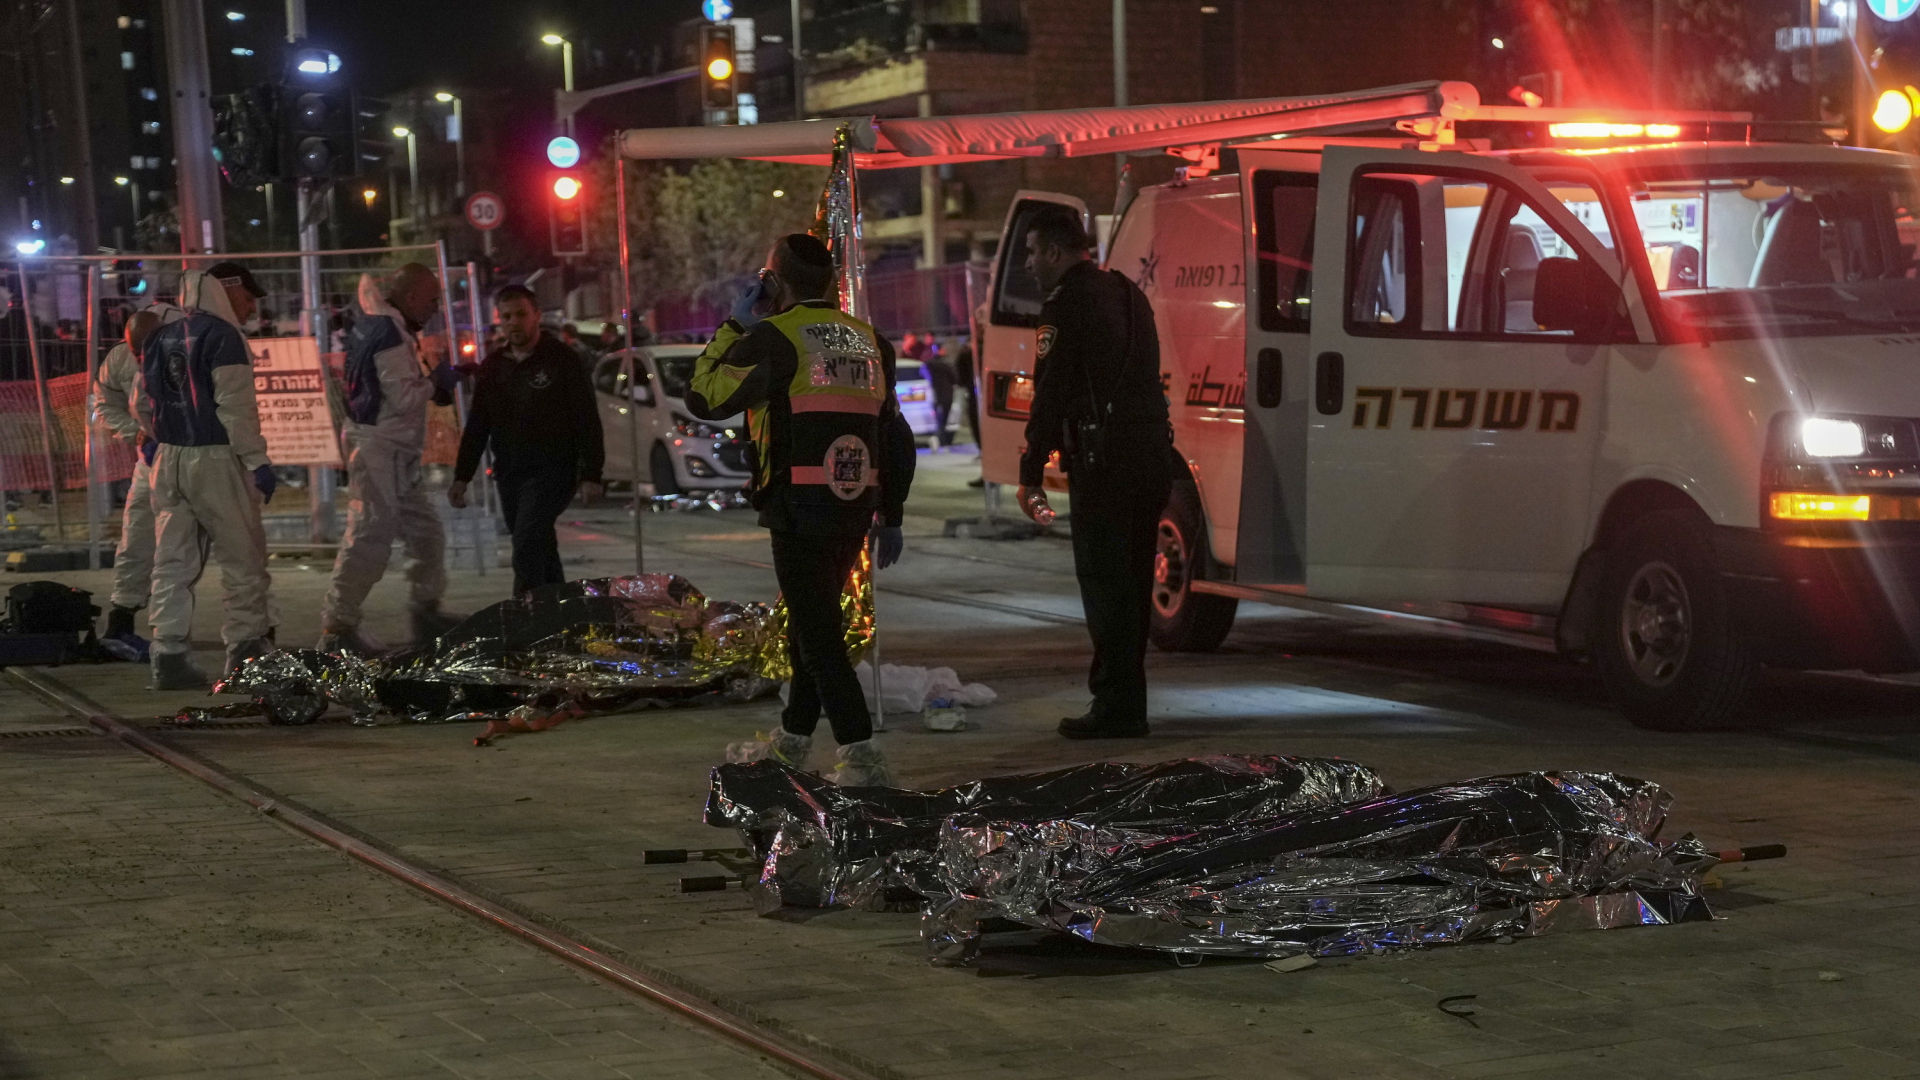 Rettungseinsatz nach Angriff mit mehreren Toten in Jerusalem. Mehrere abgedeckte Opfer liegen auf dem Boden.